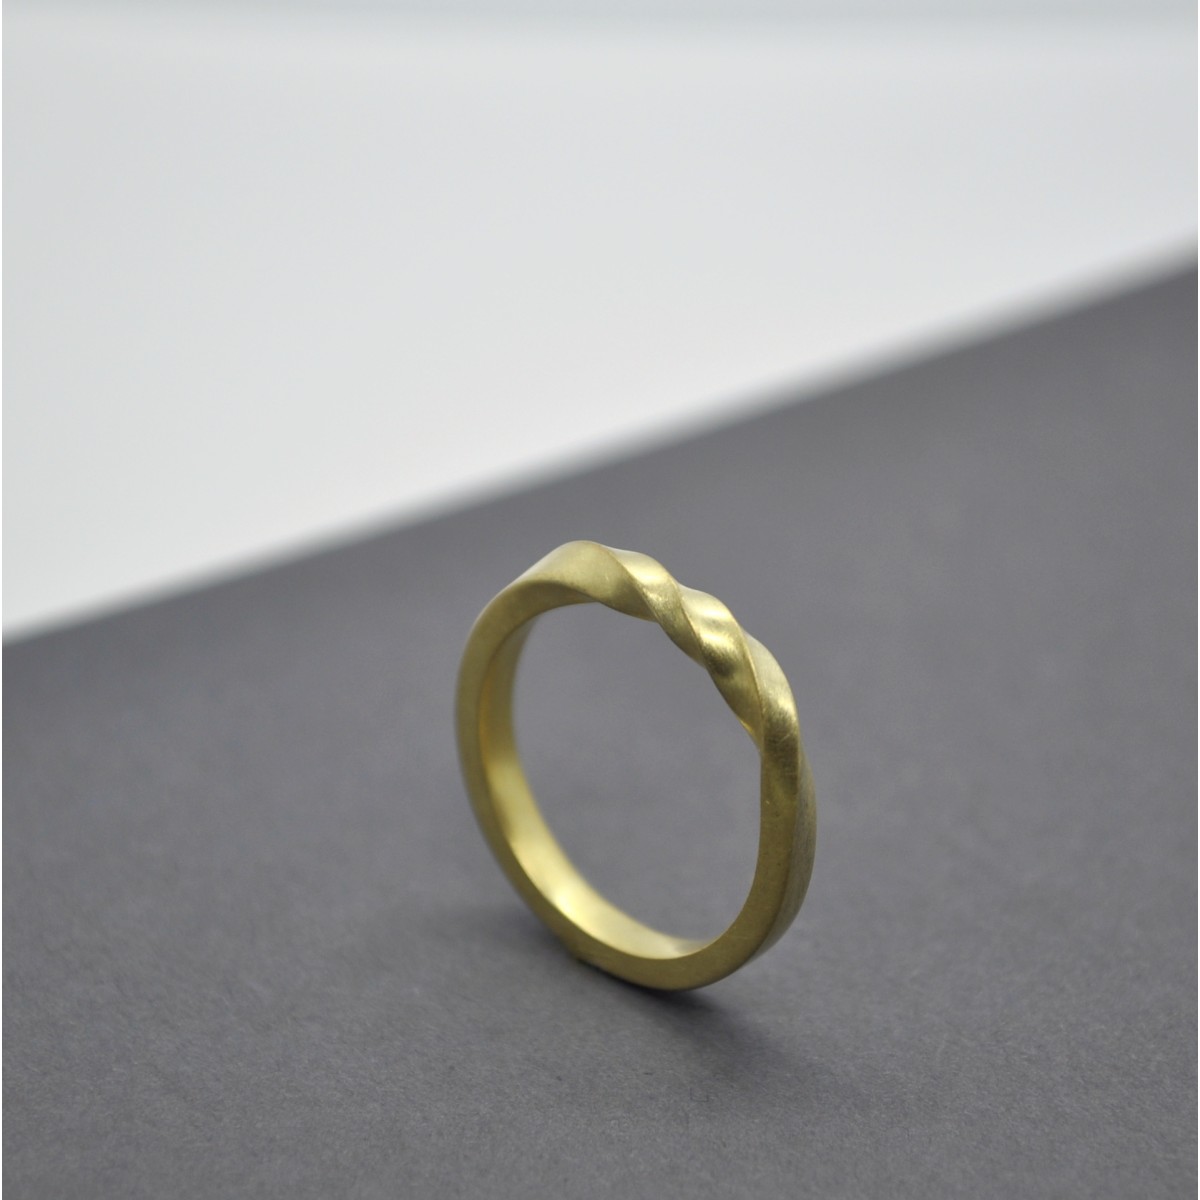 Ring "Rotiert" aus Silber von Doppelludwig